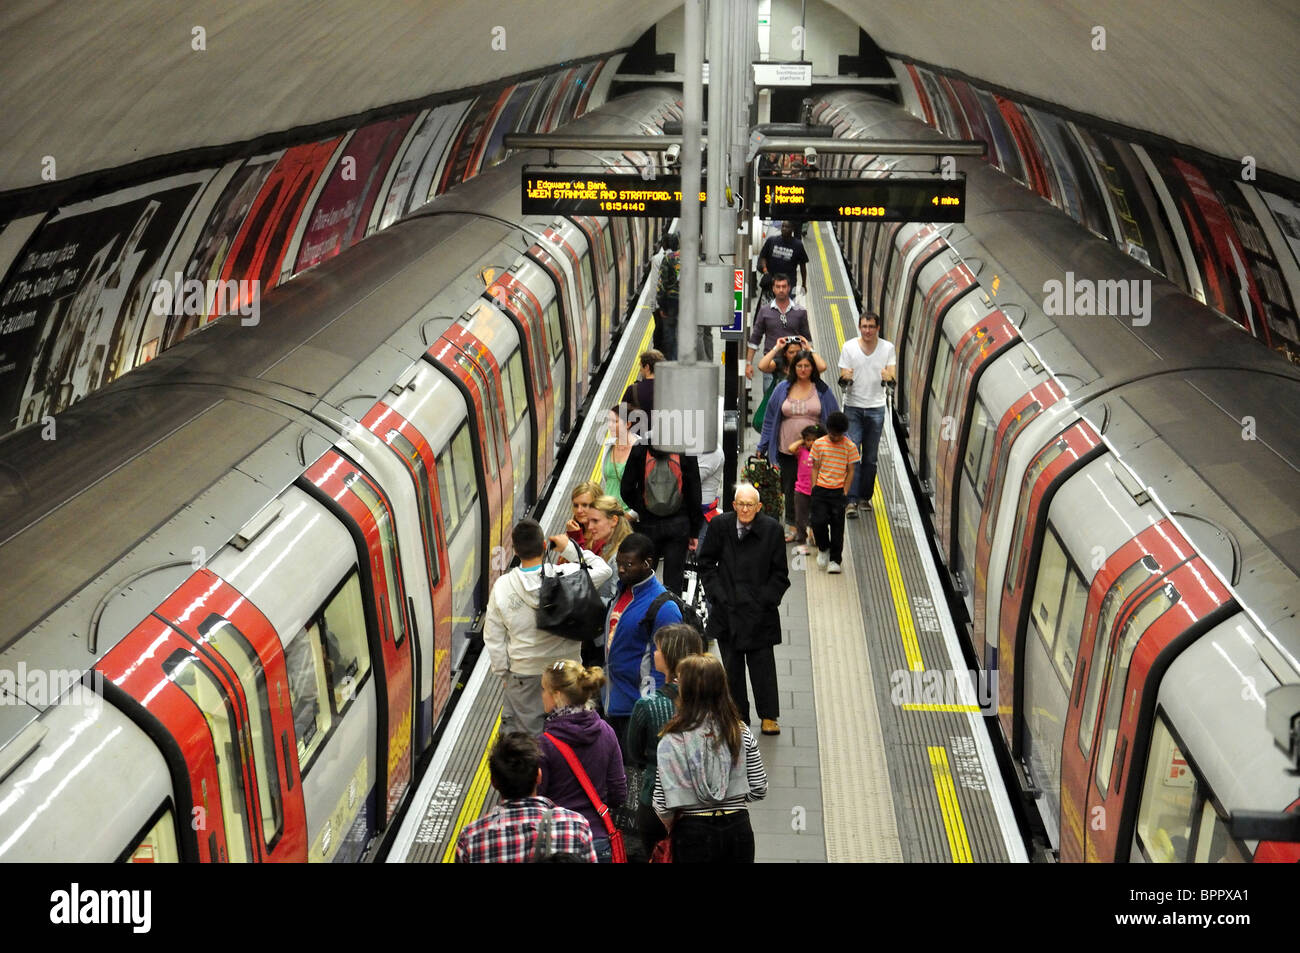 La station de métro Clapham Common, intérieur, Clapham London Borough of Lambeth, Greater London, Angleterre, Royaume-Uni Banque D'Images